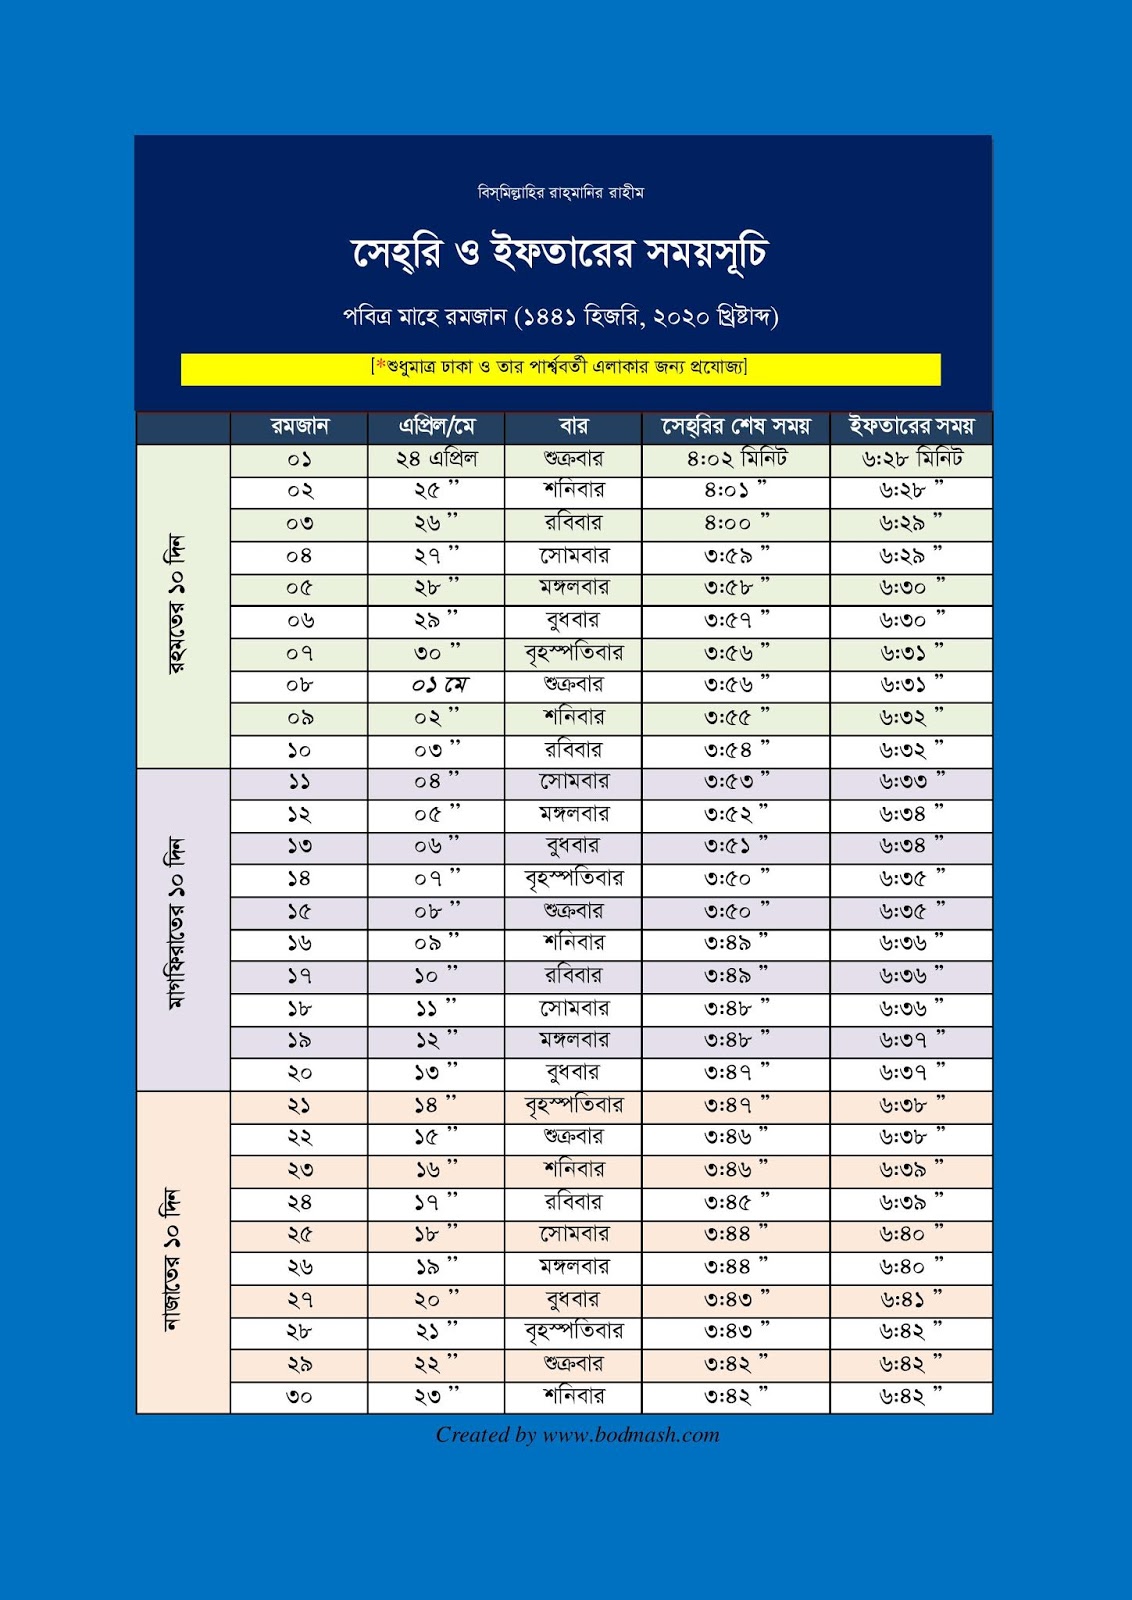 bangladesh-government-holiday-calendar-2018-bd-2016-pdf-vrogue